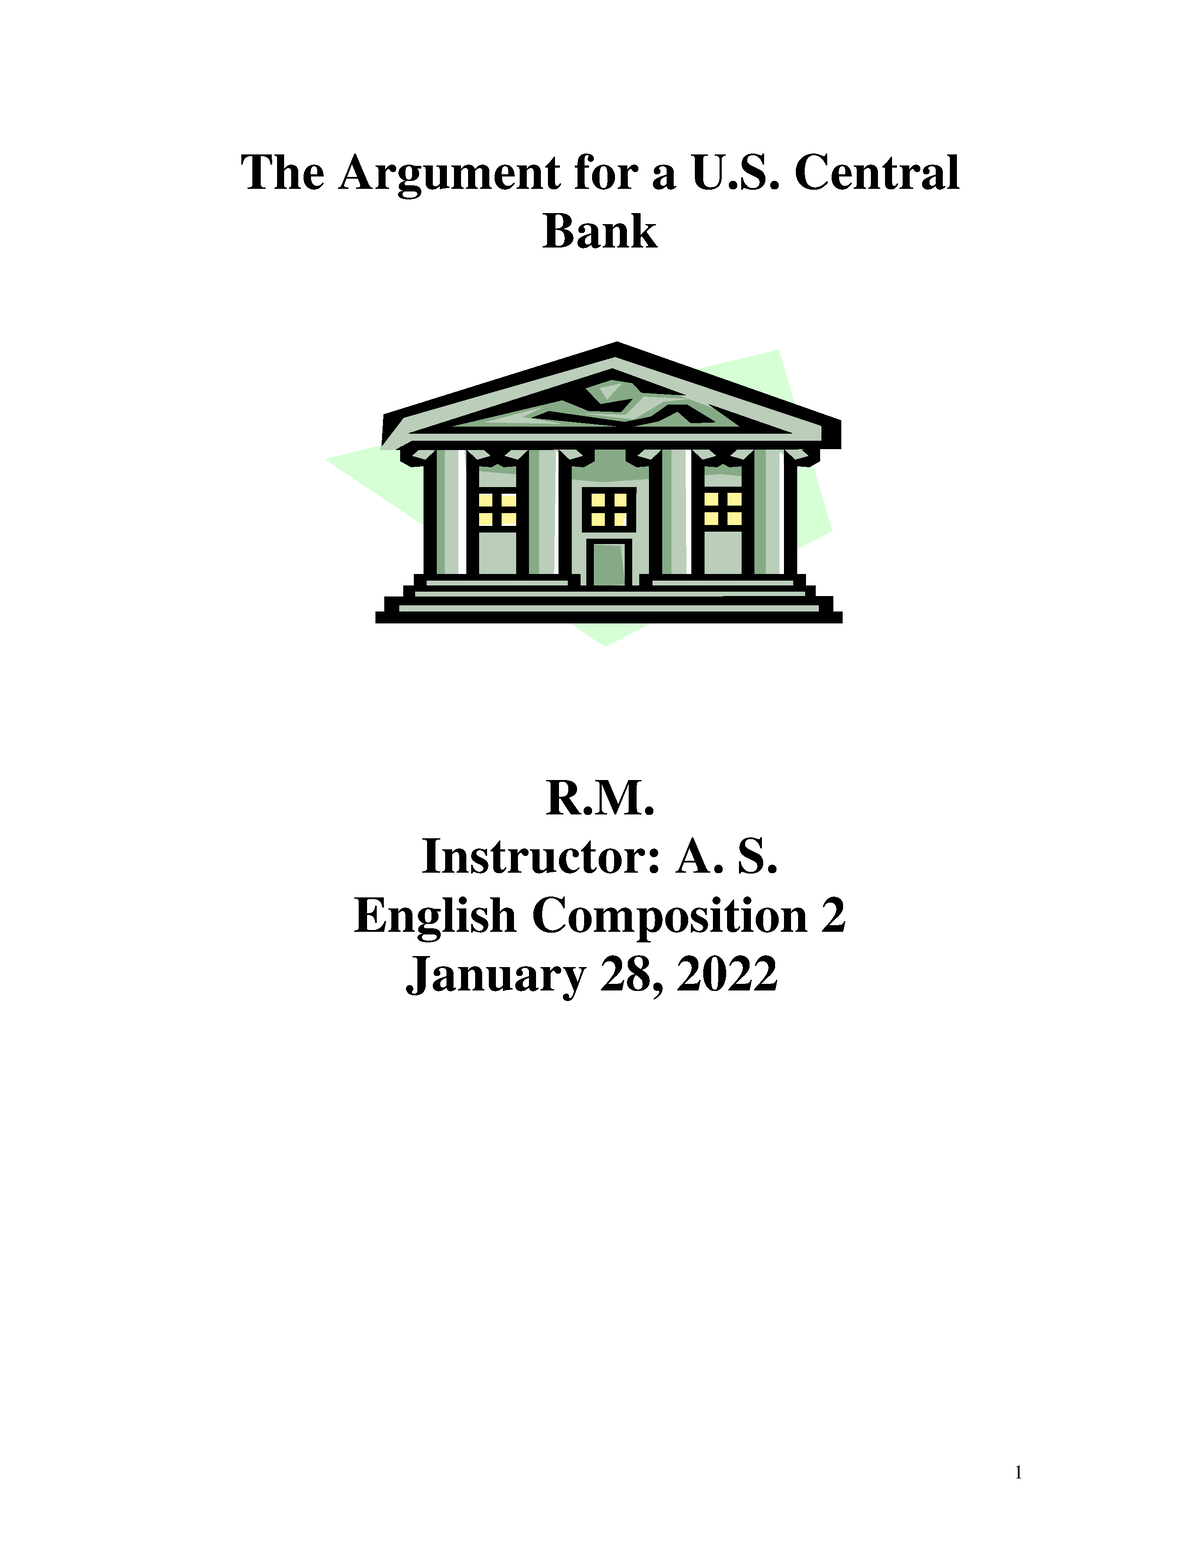 federal-reserve-v2-the-argument-for-a-u-central-bank-r-instructor